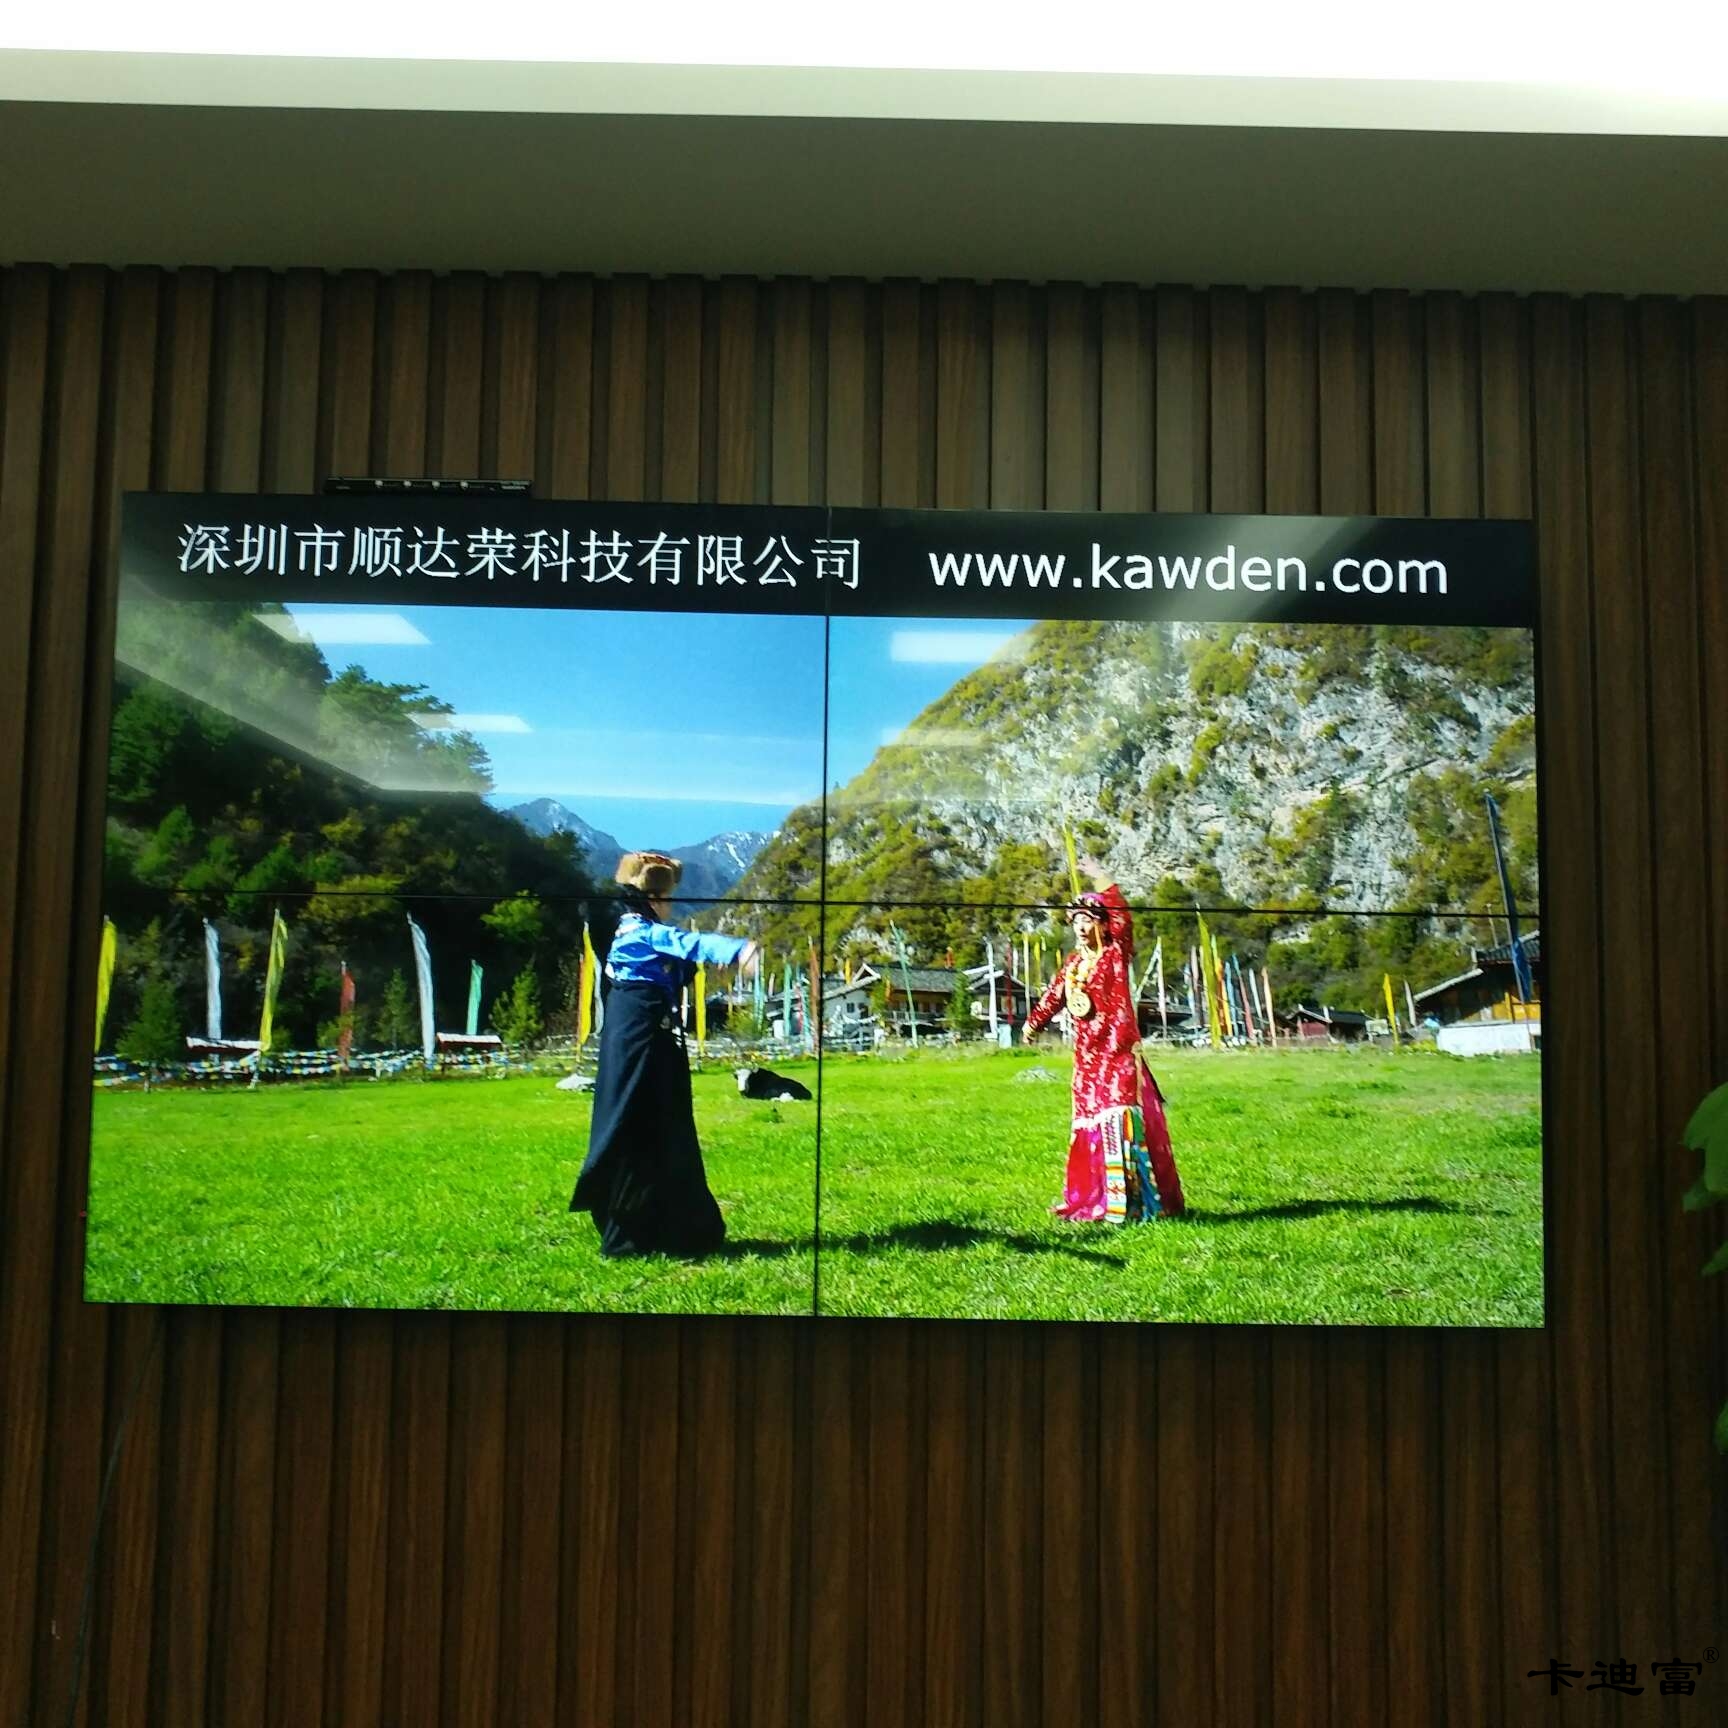 深圳企业大厅46寸液晶拼接墙展示案例